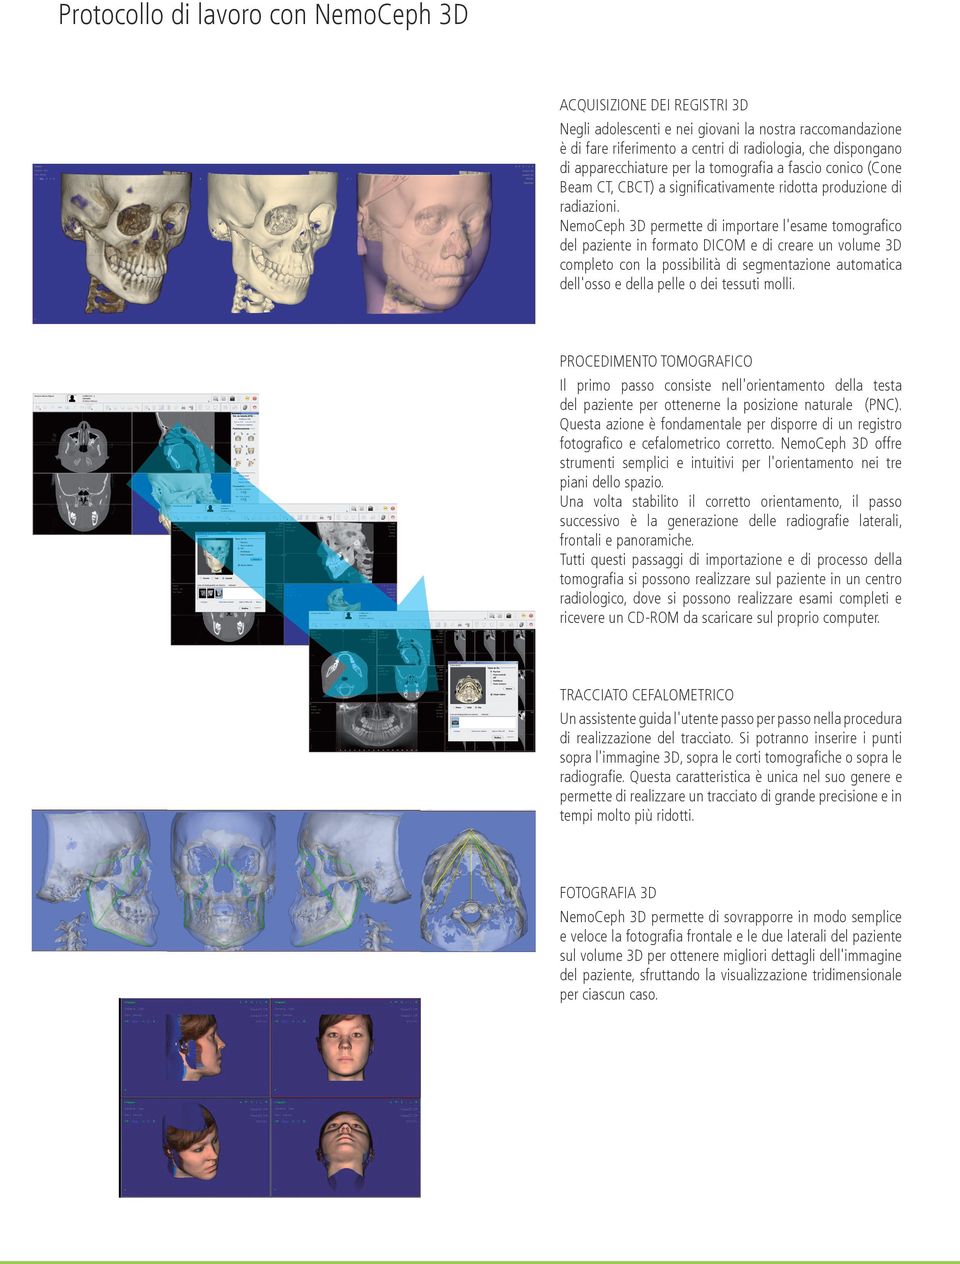 NemoCeph 3D permette di importare l'esame tomografico del paziente in formato DICOM e di creare un volume 3D completo con la possibilità di segmentazione automatica dell'osso e della pelle o dei